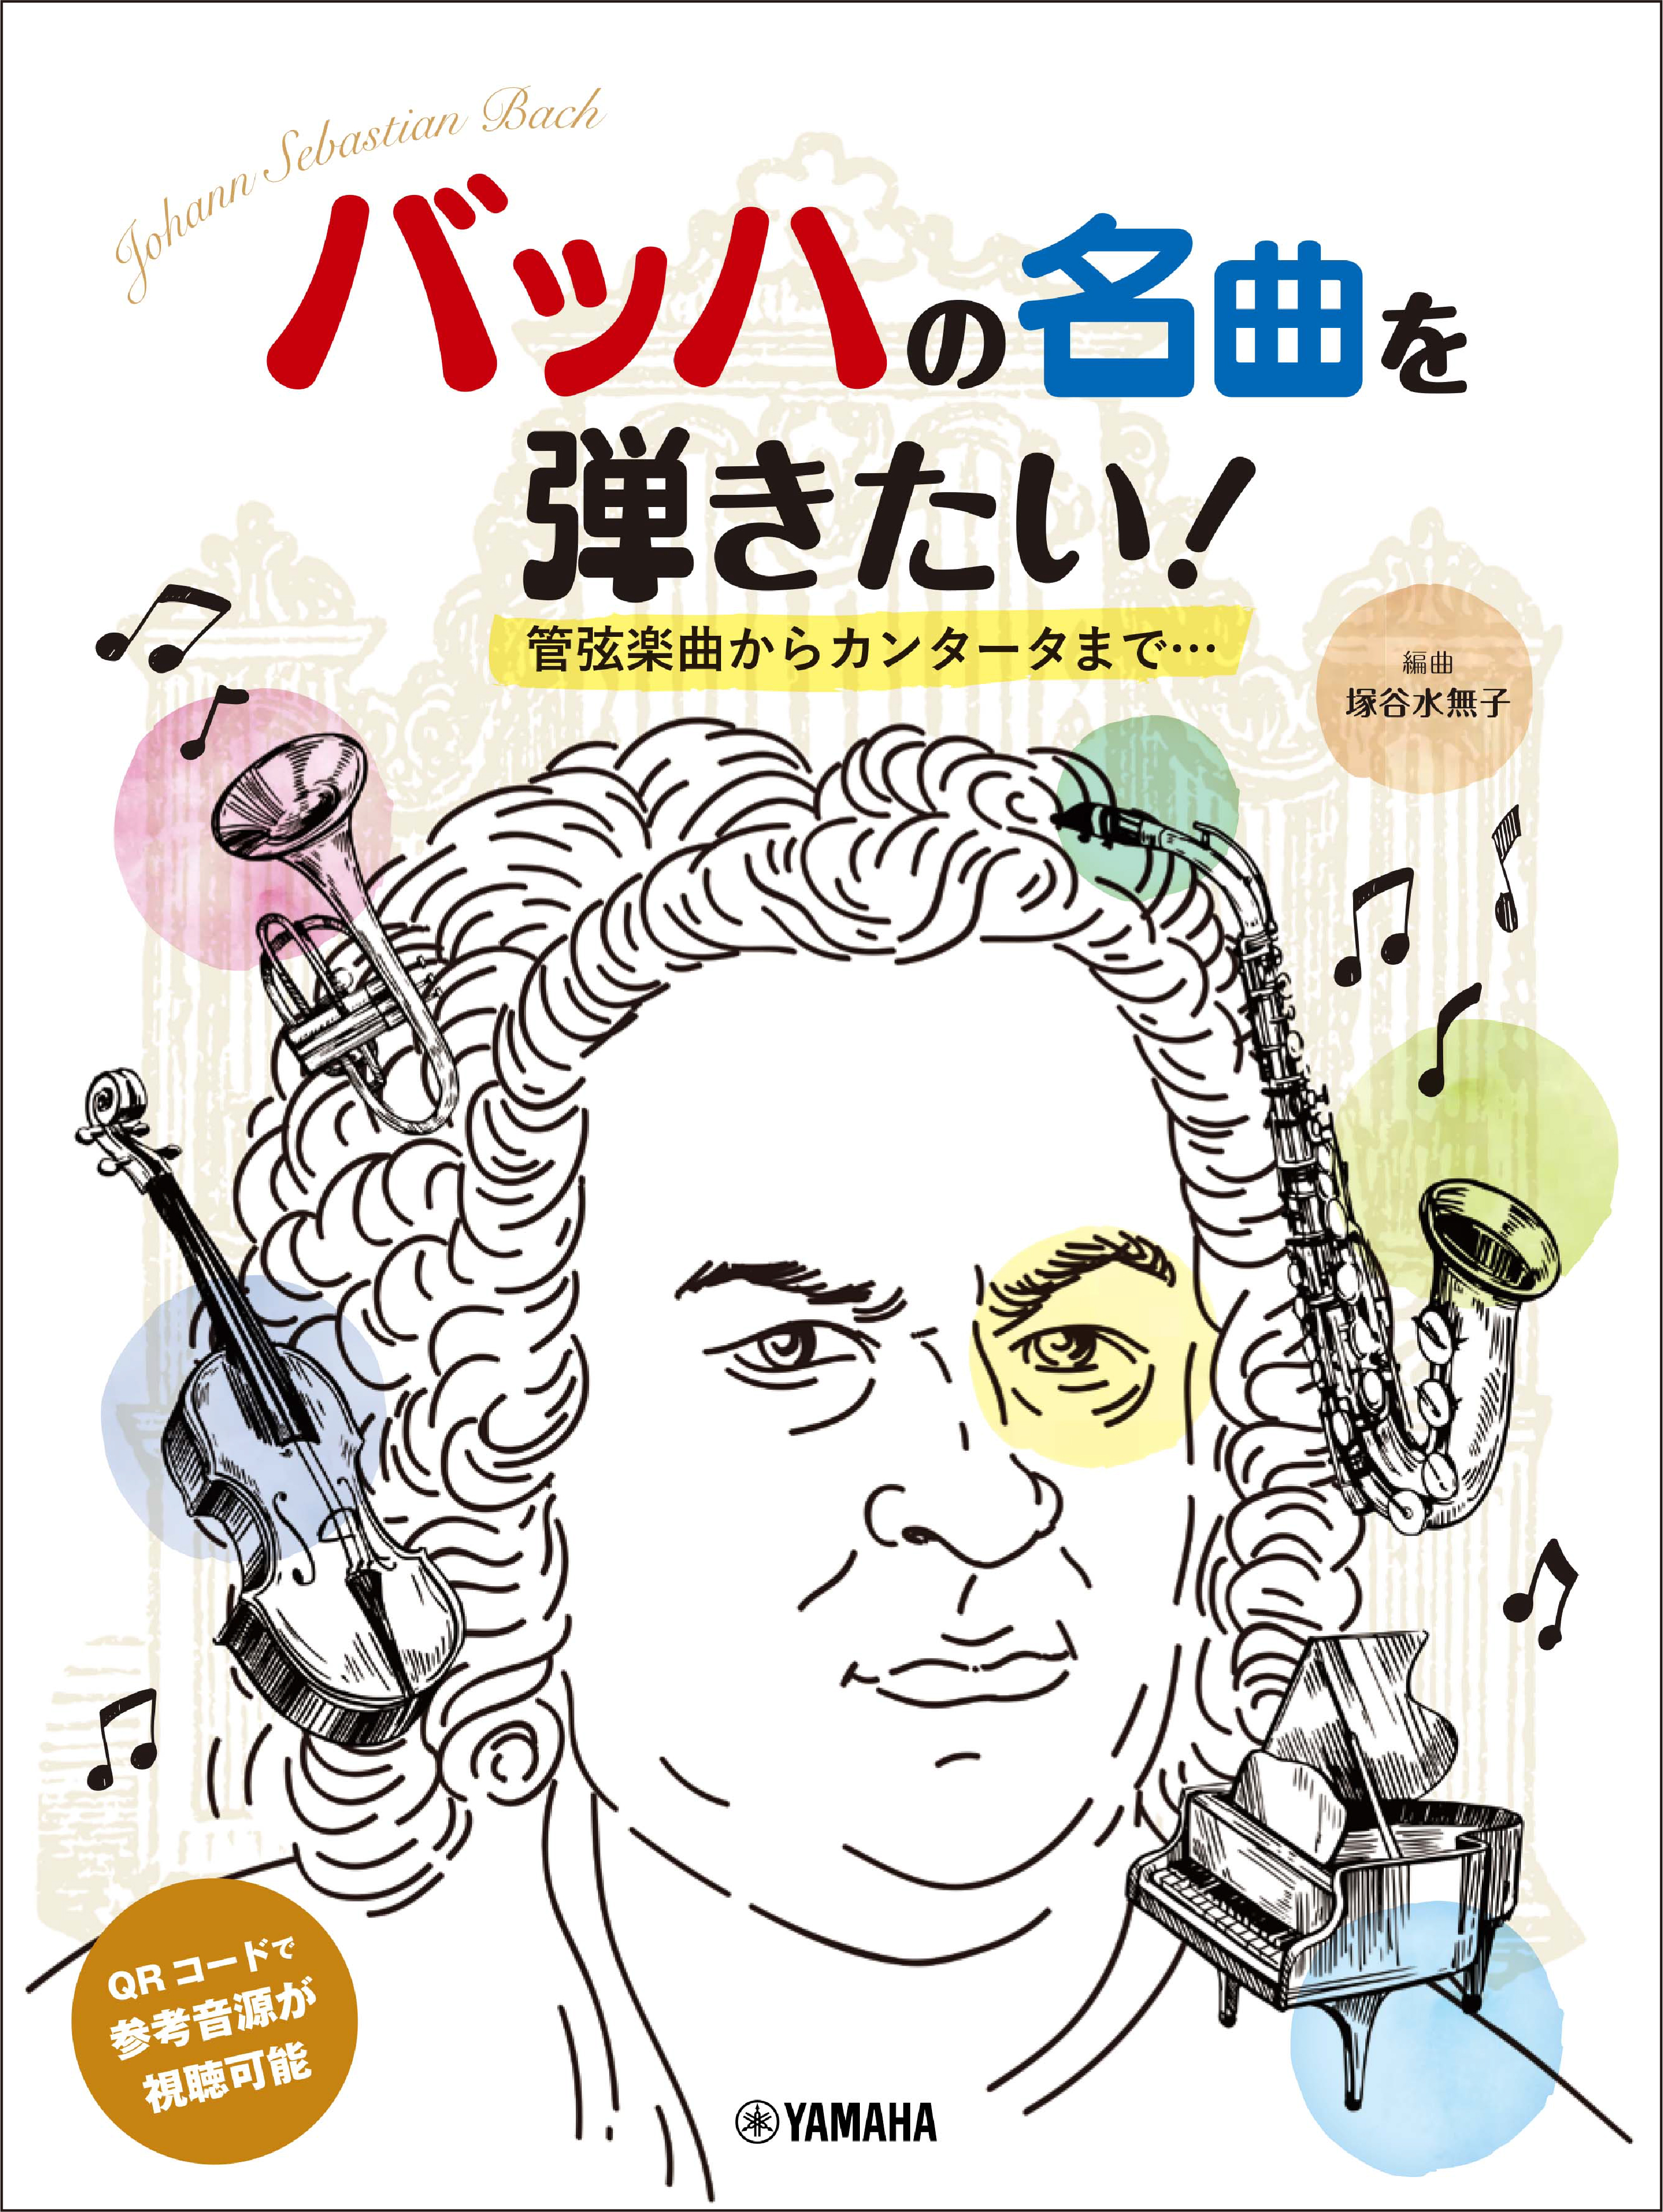 『ピアノソロ 初中級 バッハの名曲を弾きたい! 管弦楽曲からカンタータまで… 編曲:塚谷水無子』 3月26日発売！